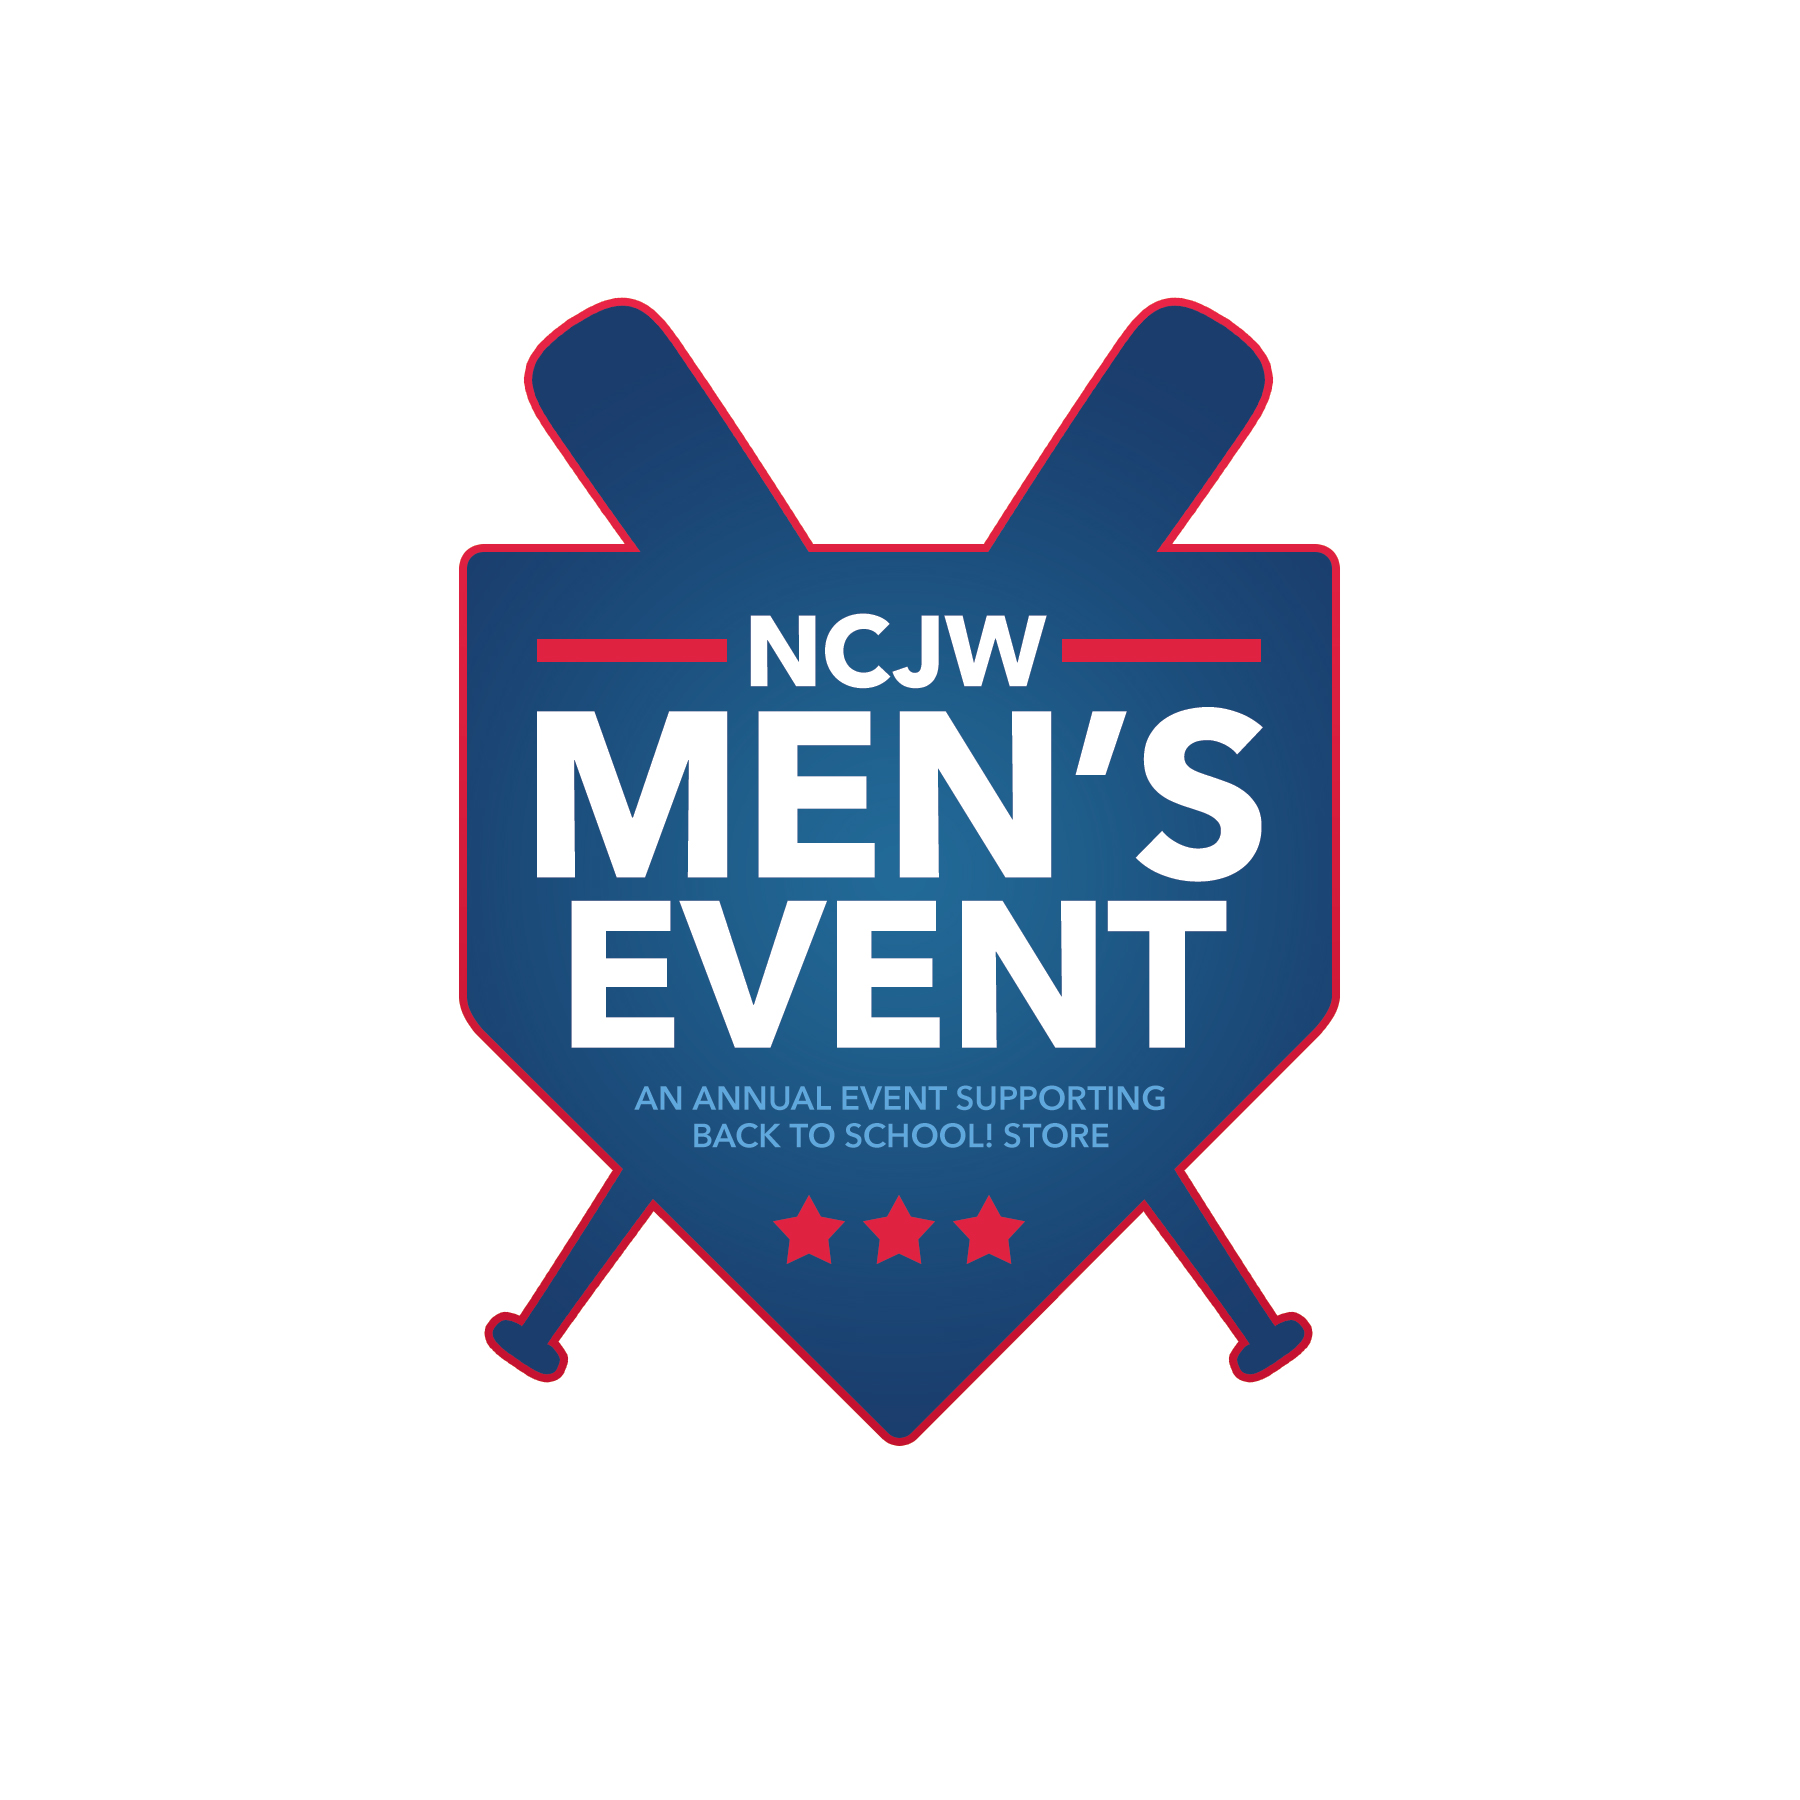 NCJW STL Men's Event